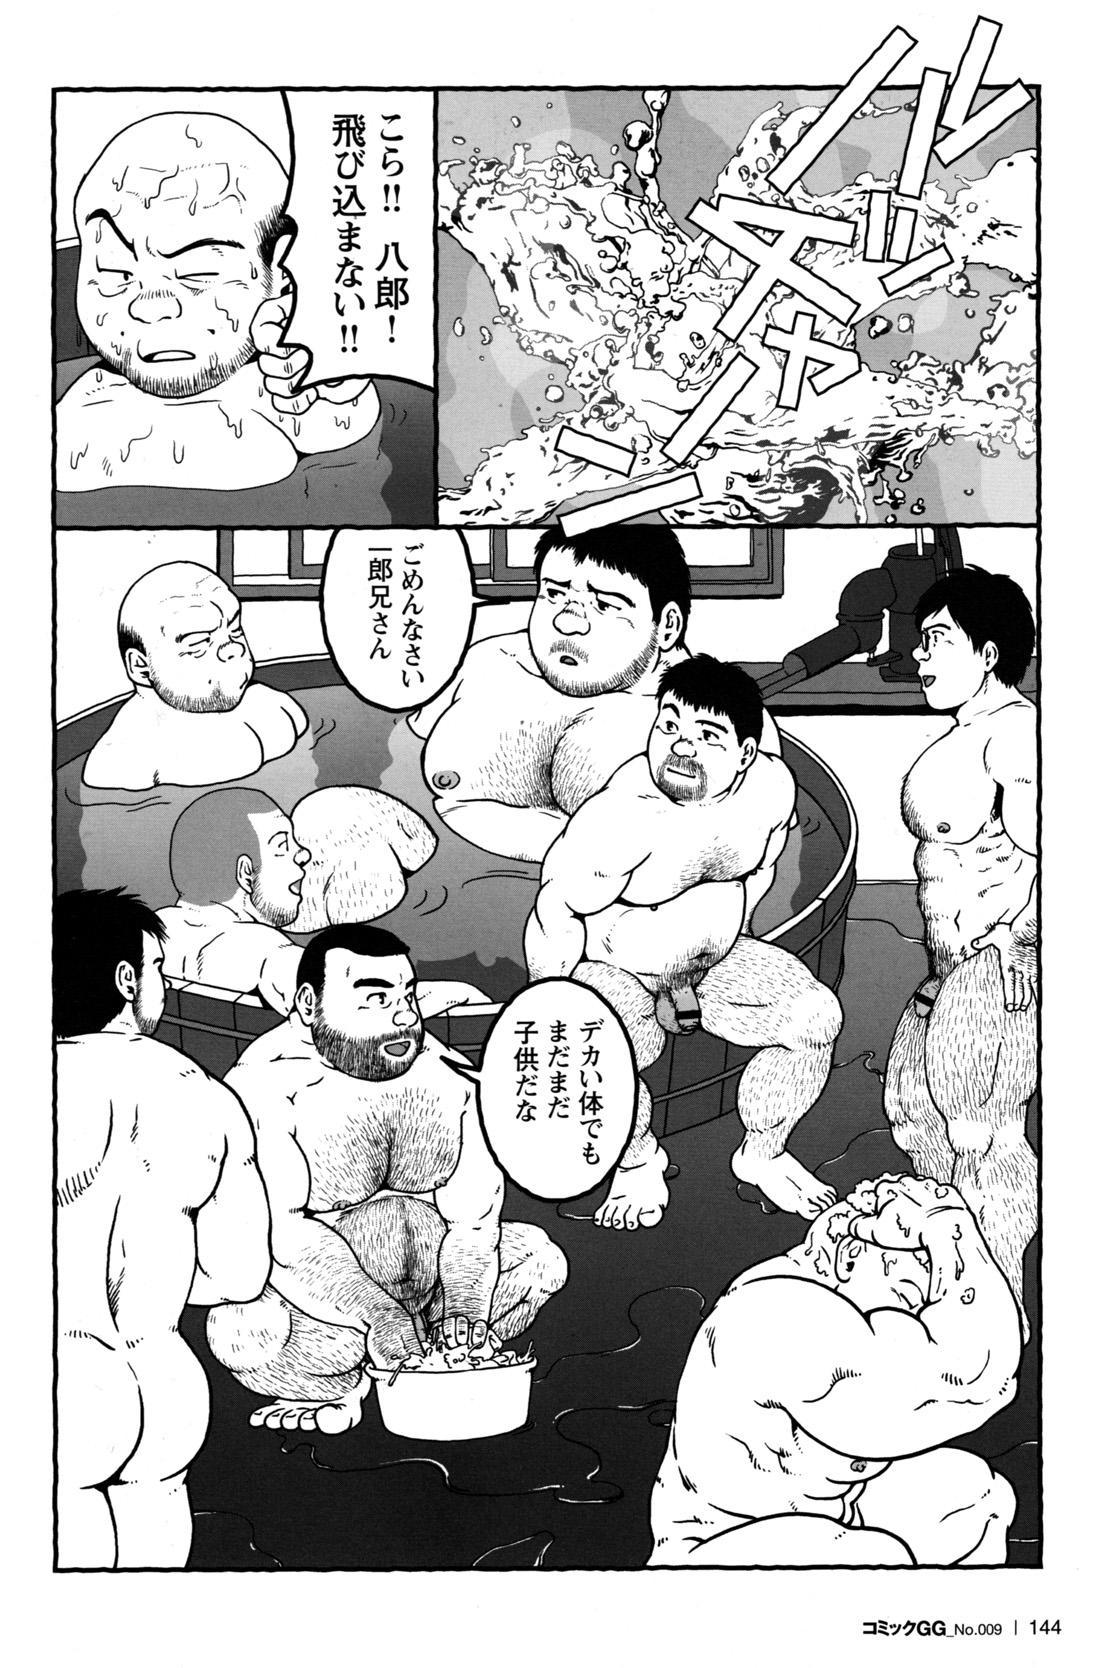 Comic G-men Gaho No.09 Gacchibi Zeme 133